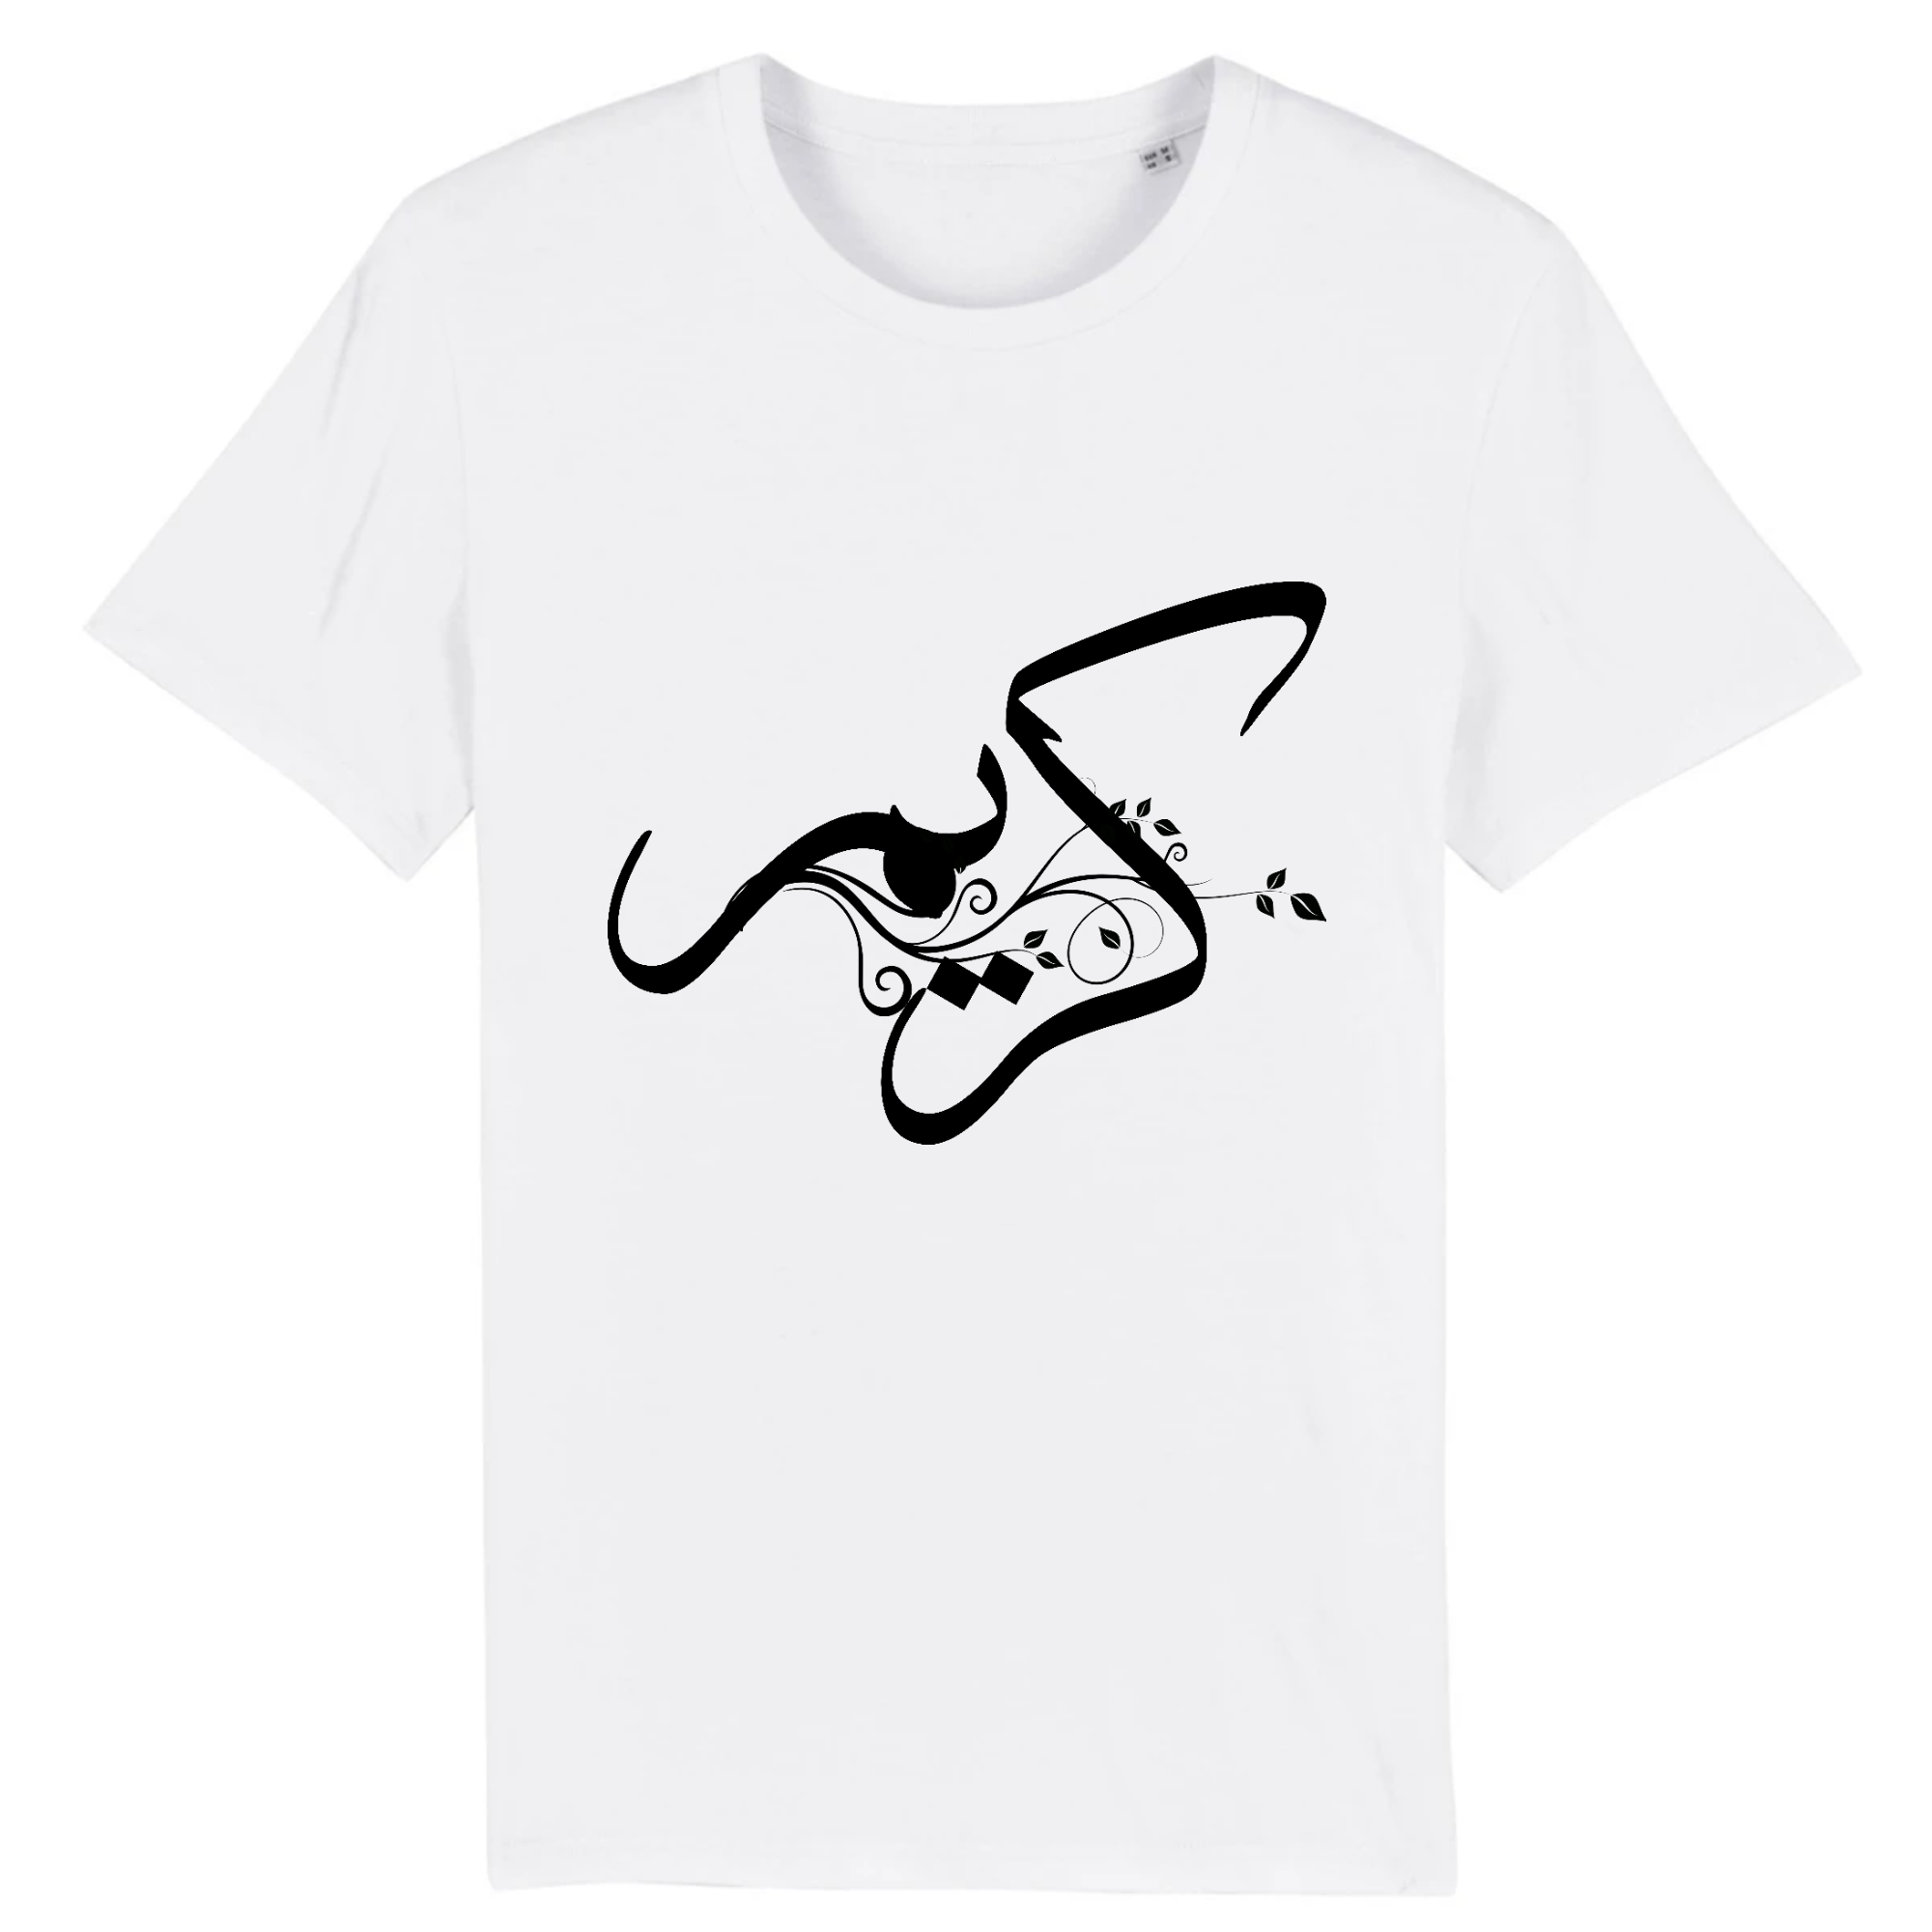 Karim - T-shirt Calligraphie Arabe